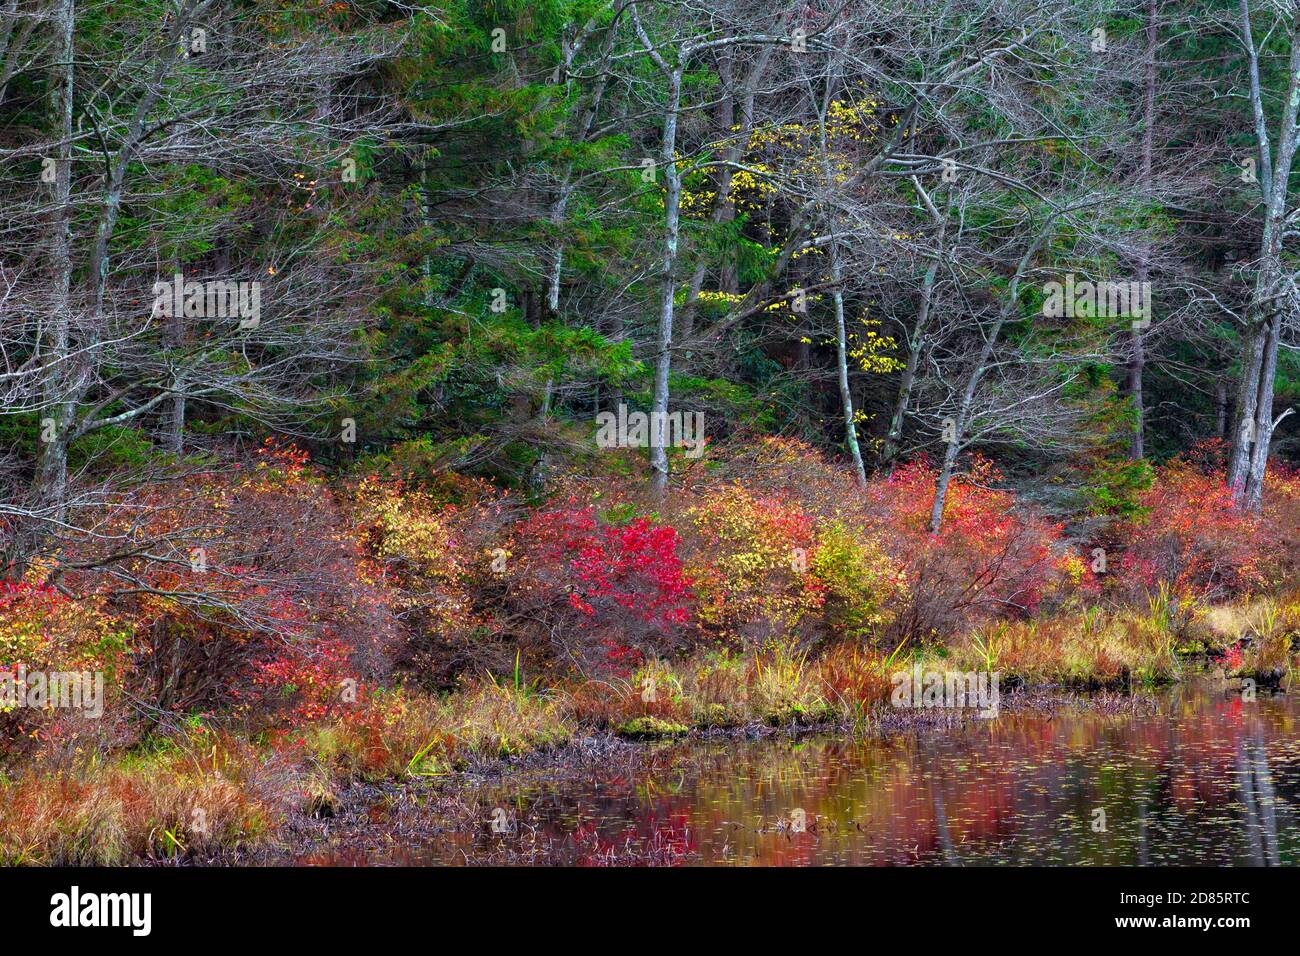 La végétation de la fin de l’automne s’étend le long des rives du lac Promise Land au parc national Promise Land, dans les montagnes Pocono de Pennsylvanie. Banque D'Images